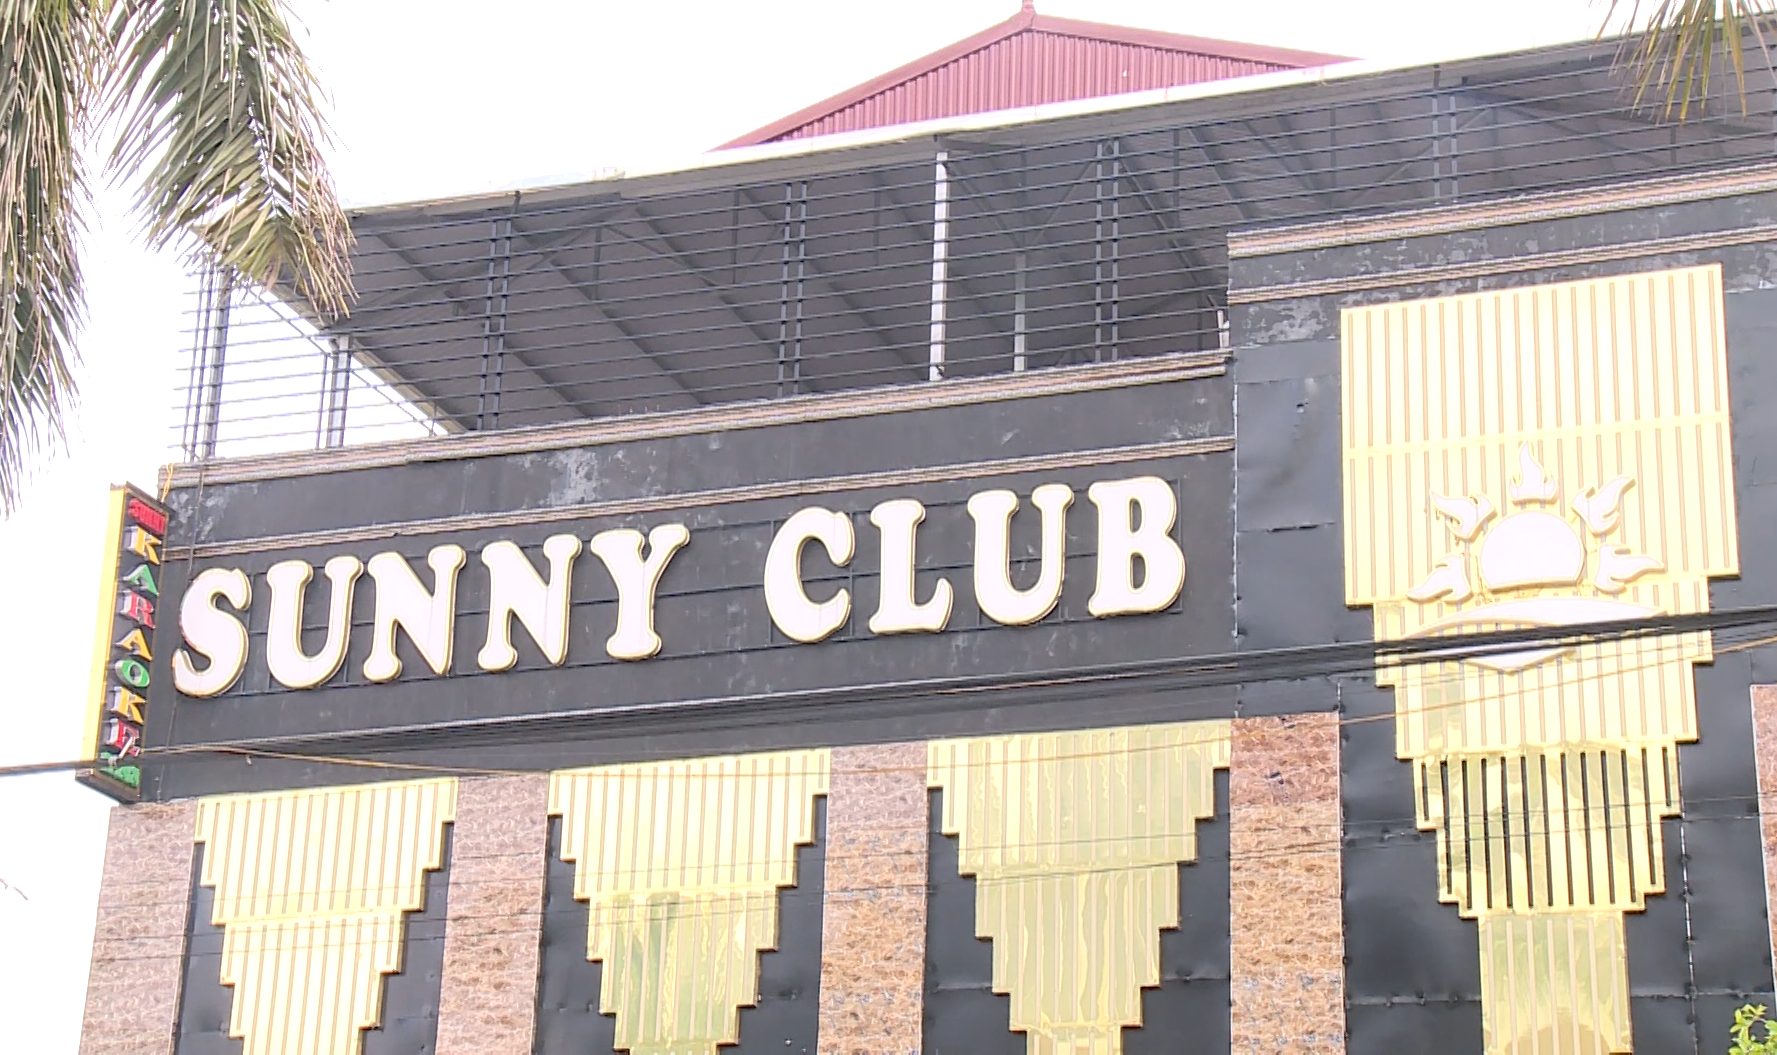 Vĩnh Phúc: Sunny Club hoạt động sai phạm, đăng ký 5 nhân viên nhưng phát hiện 24. - Ảnh 1.